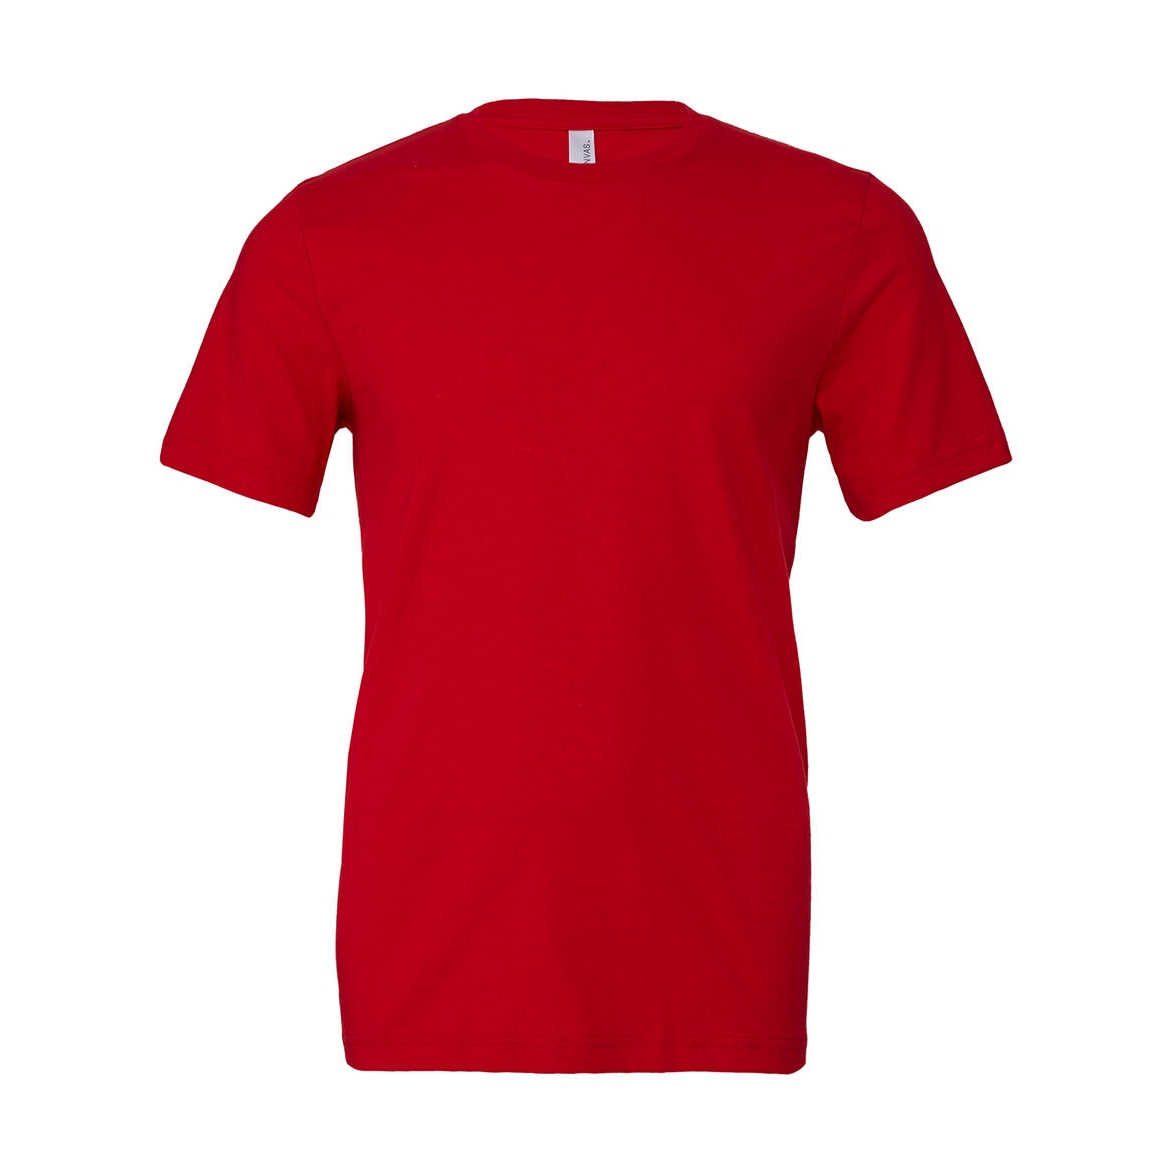 Tričko Bella Jersey - červené, XS